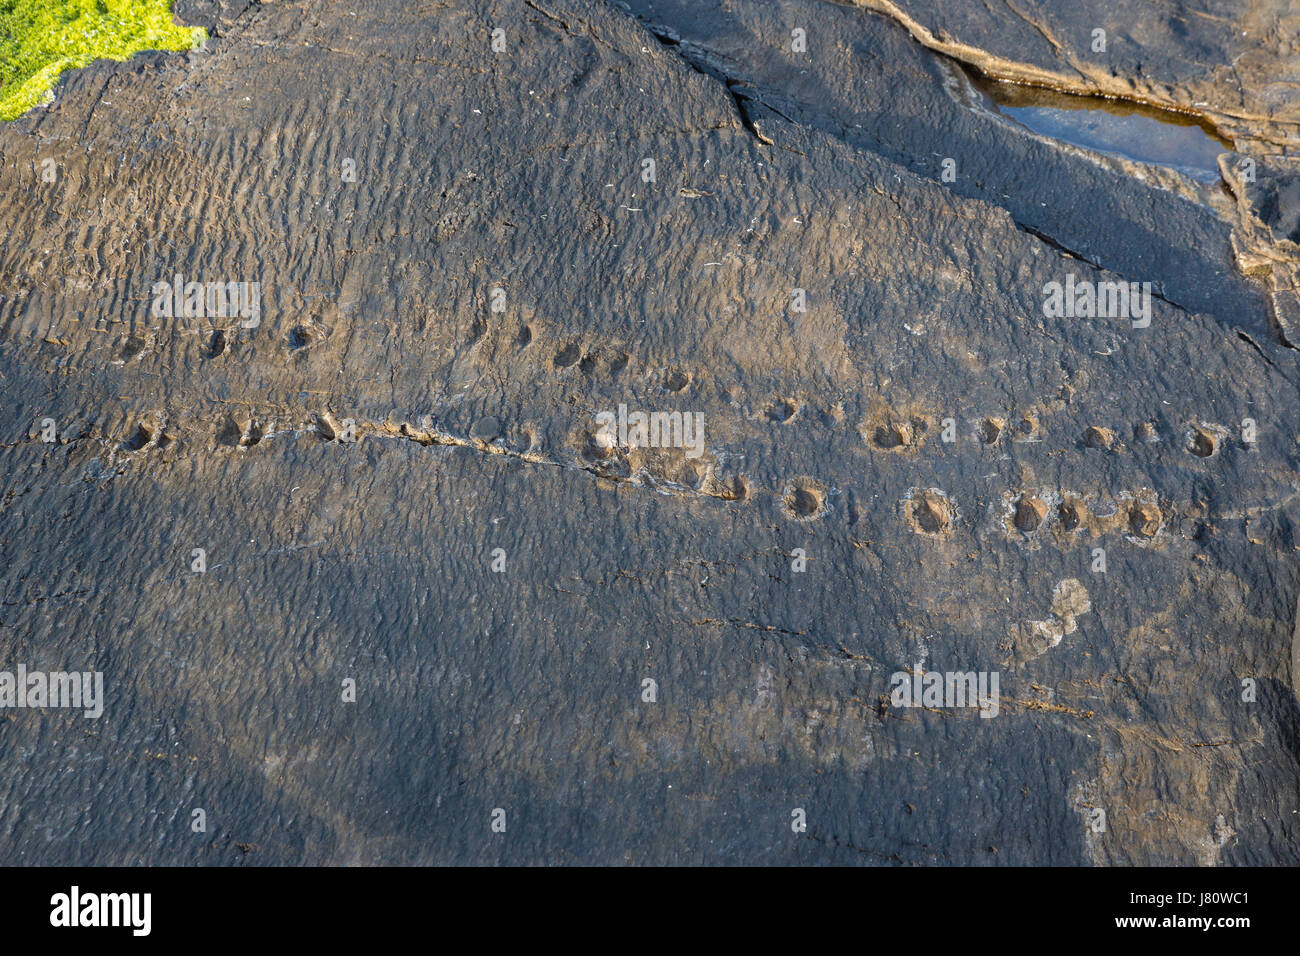 Early Tetrapod trackway, Valentia Island, County Kerry Ireland Stock Photo